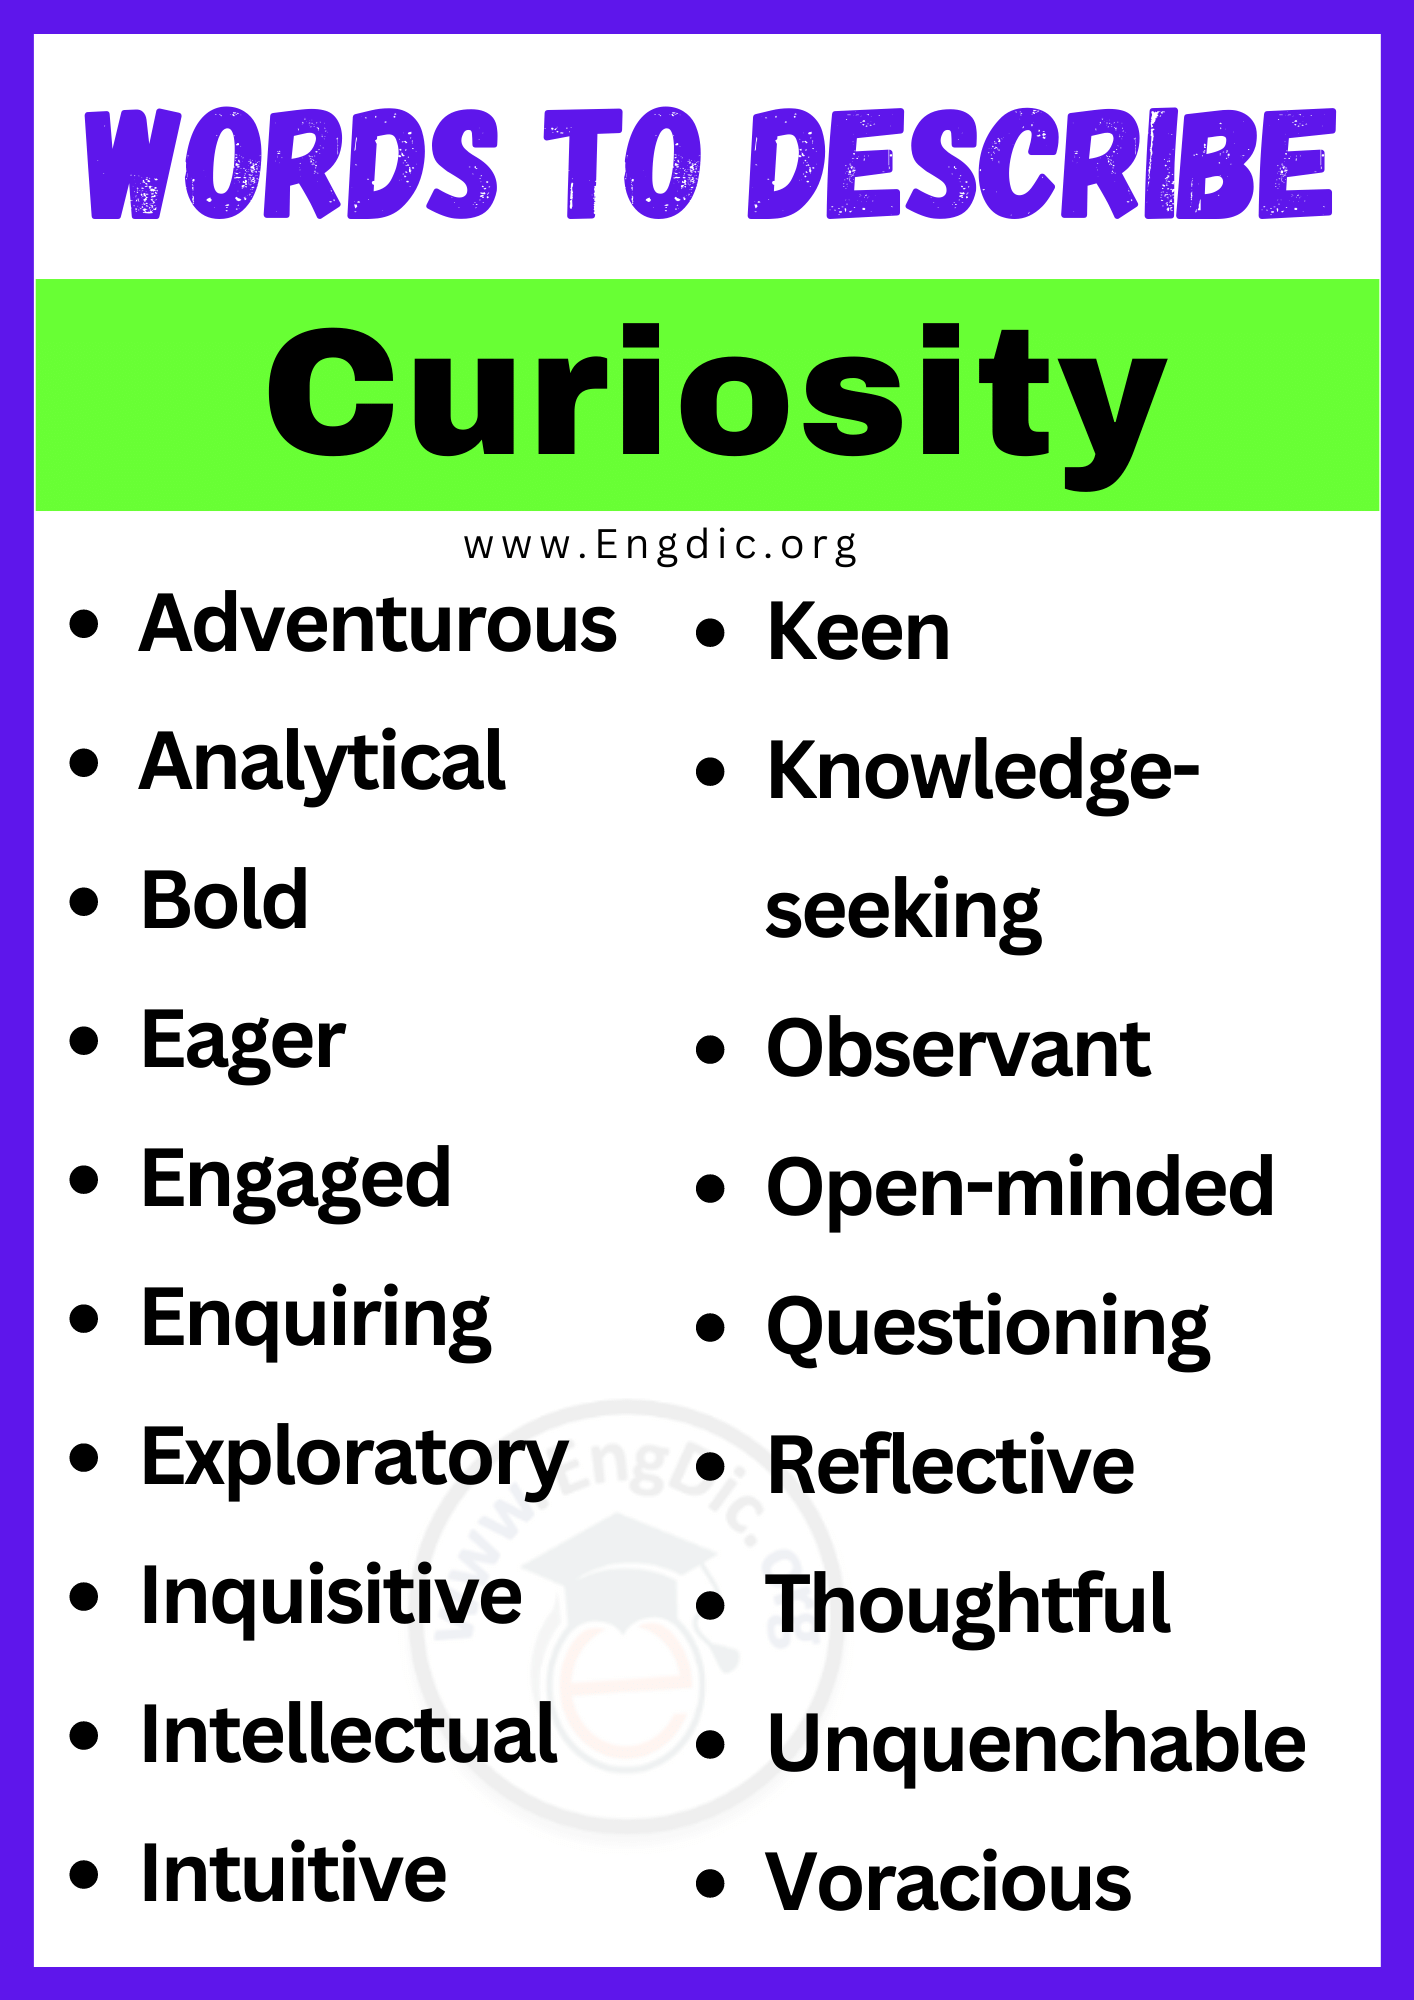 Words to Describe Curiosity